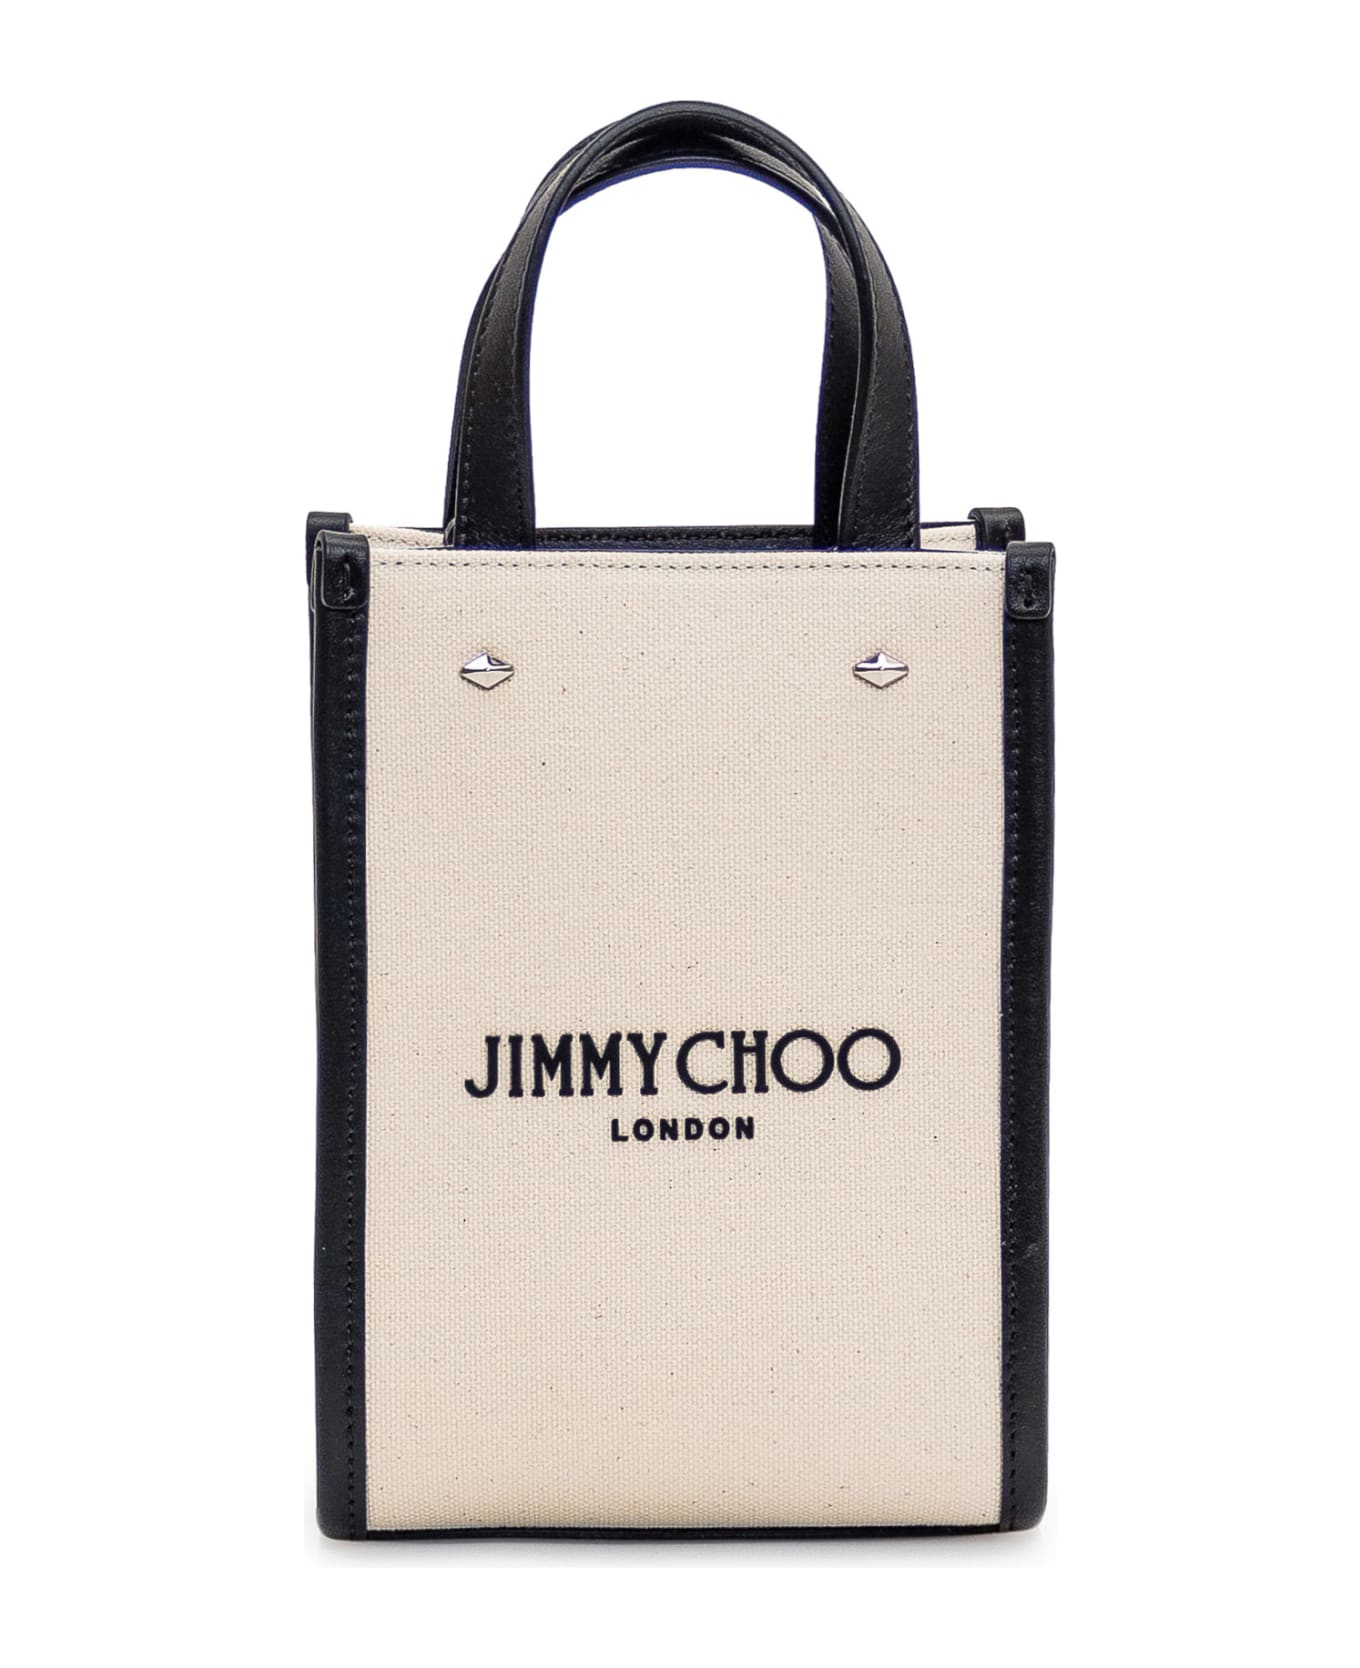 Jimmy Choo Tote Mini N/s Bag - NATURAL/BLACK/SILVER